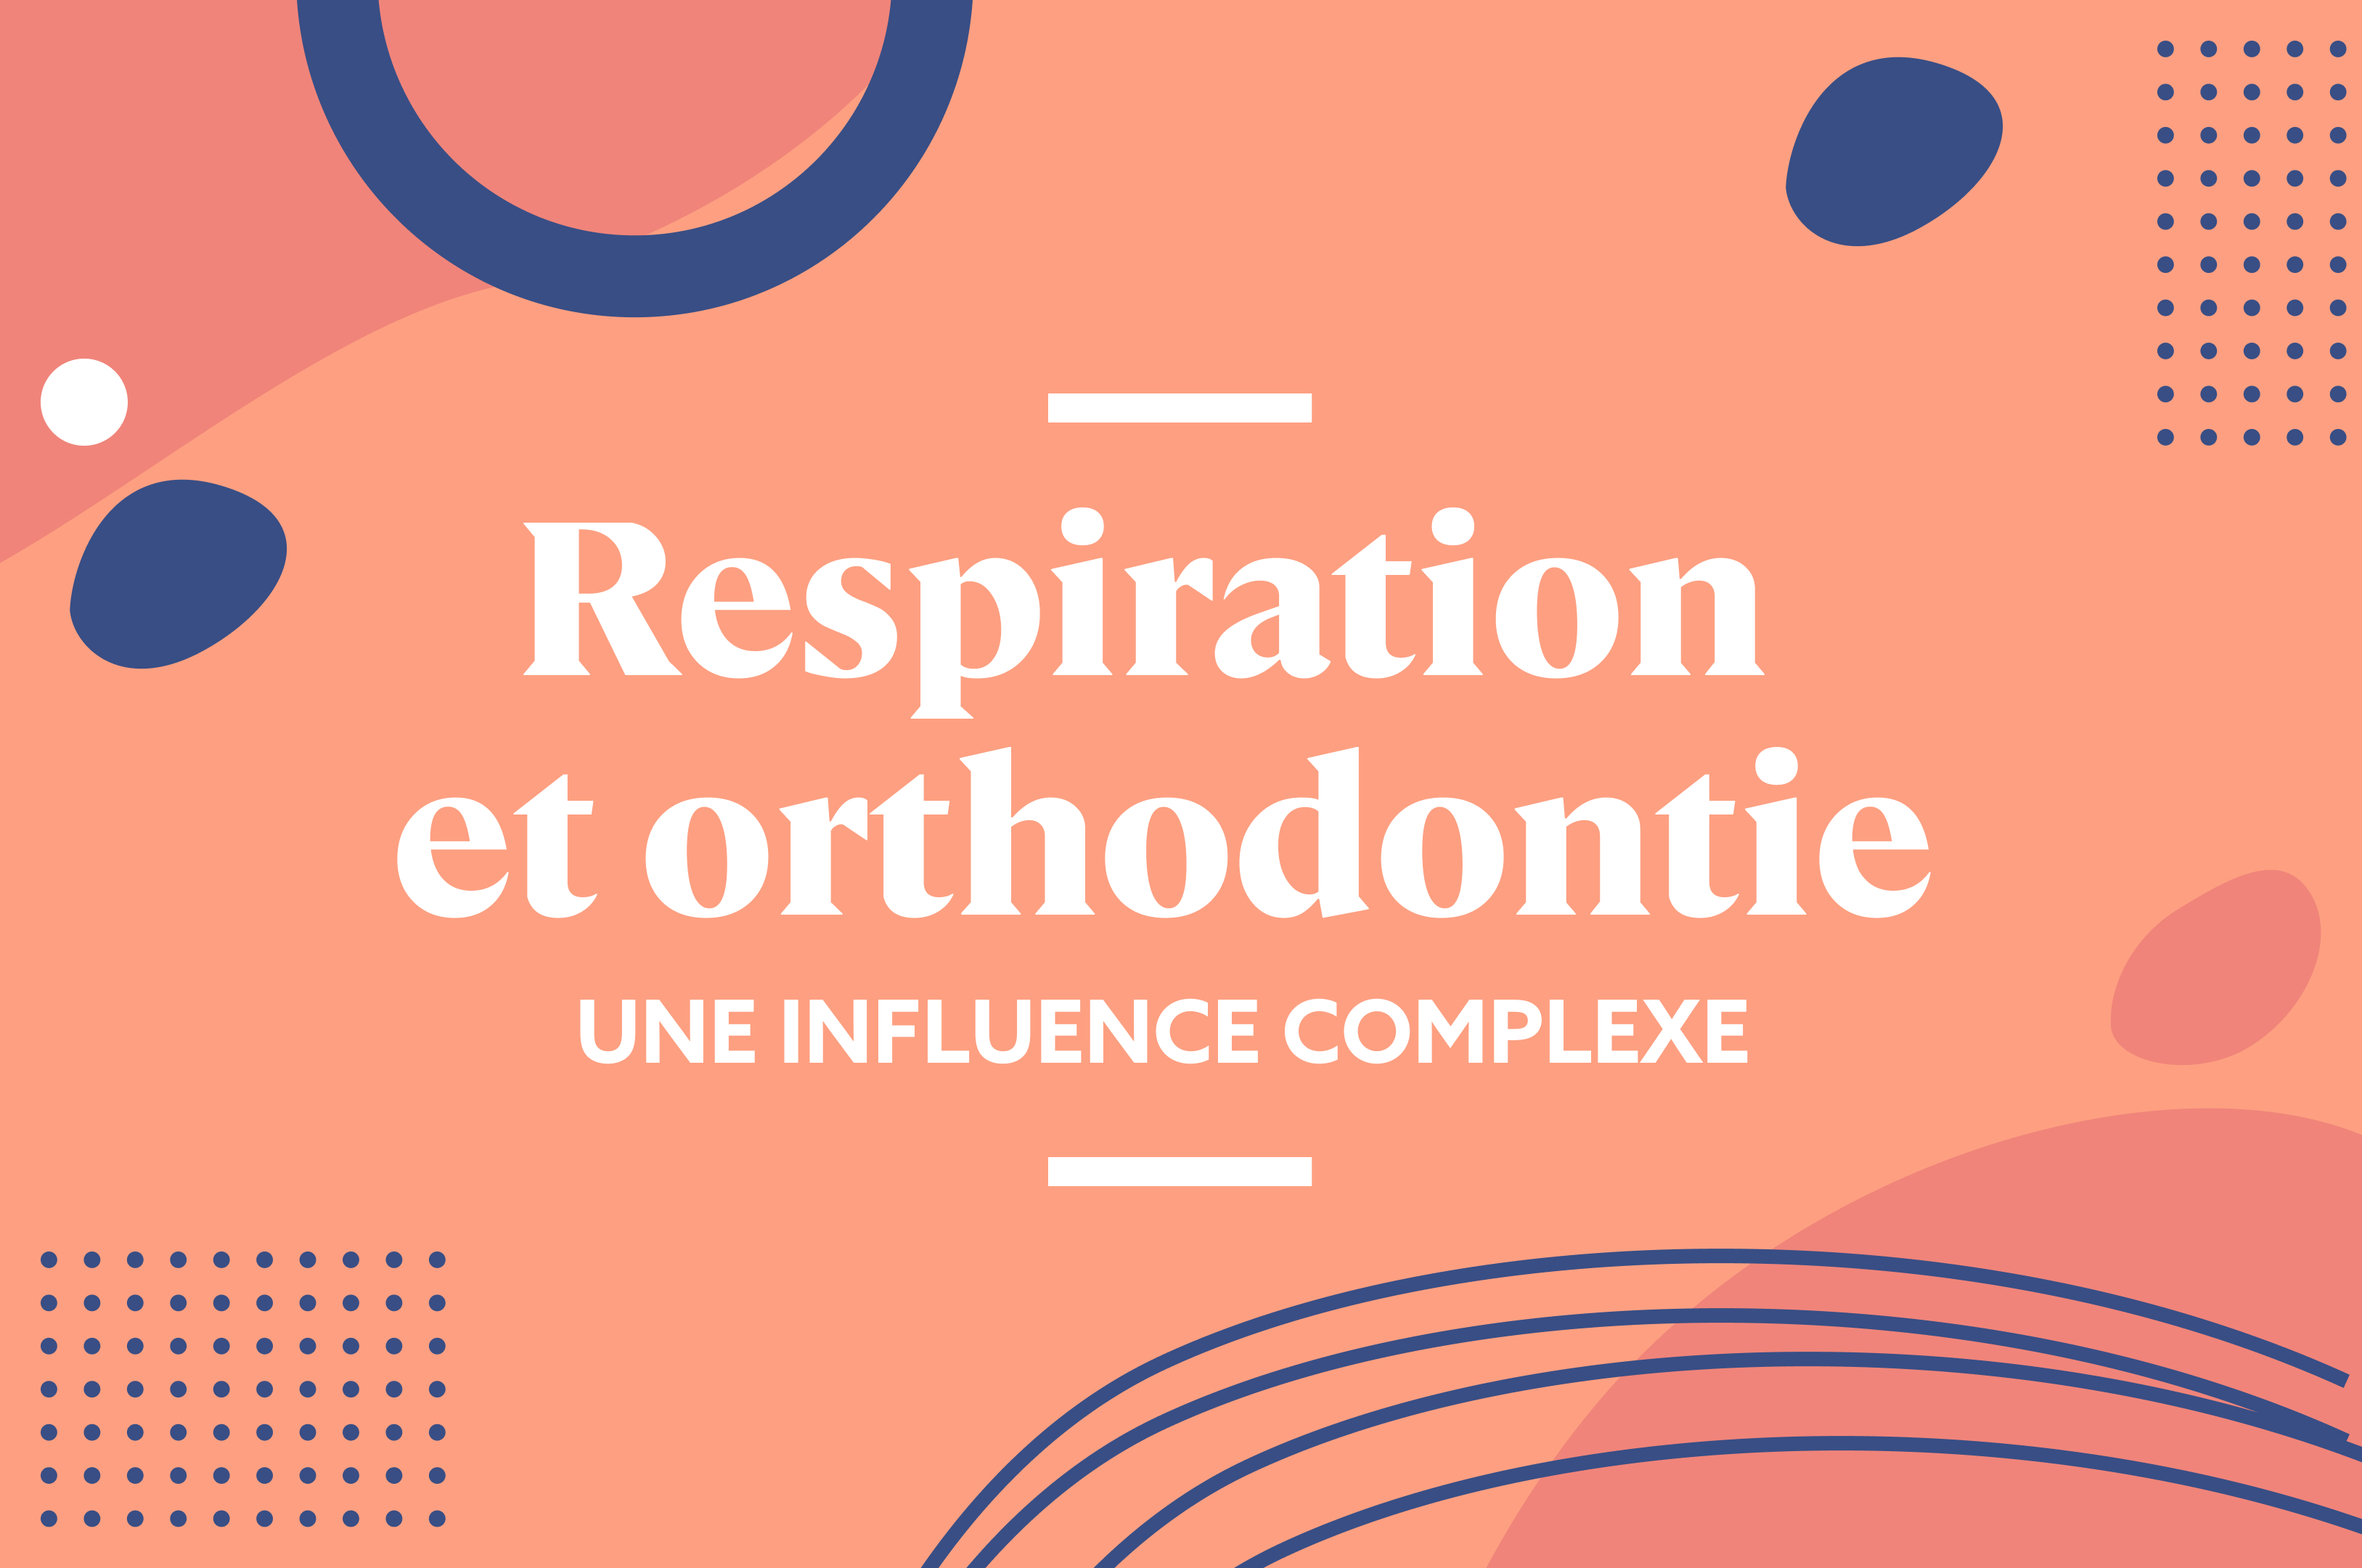 Respiration et orthodontie